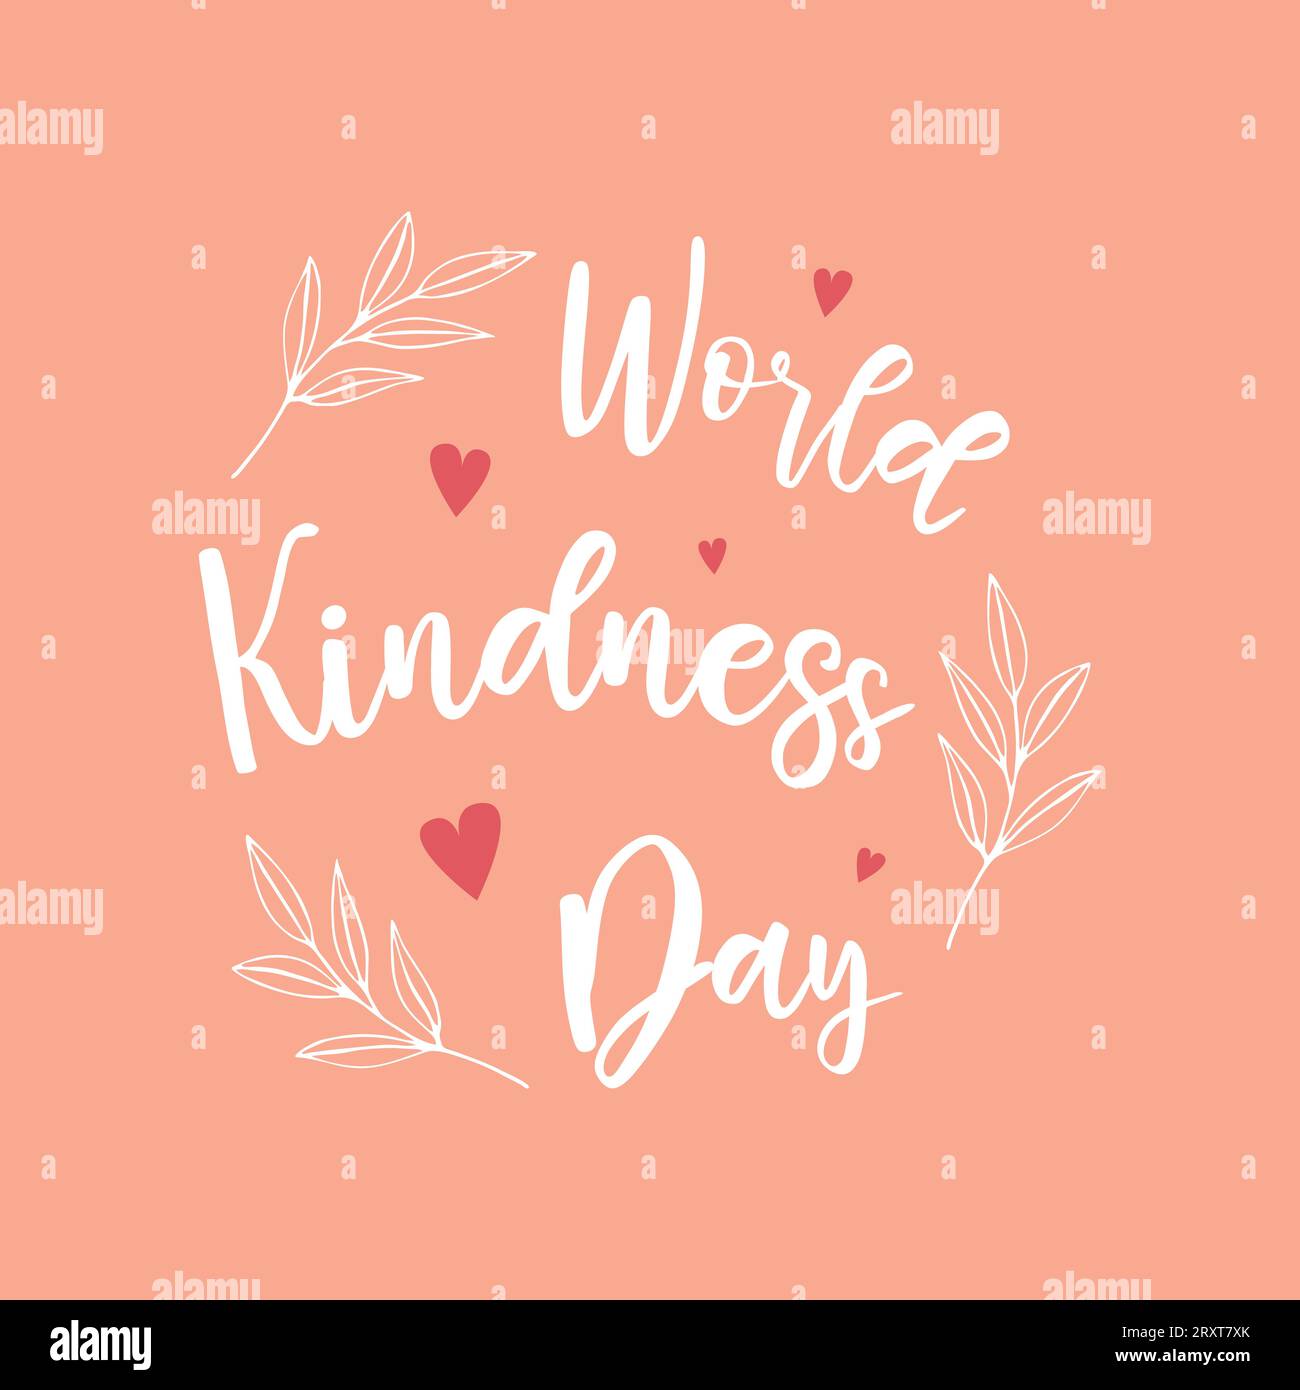 Affiche de la journée mondiale de la gentillesse couleurs rose et blanc. Lettrage et brindilles. Illustration vectorielle Illustration de Vecteur